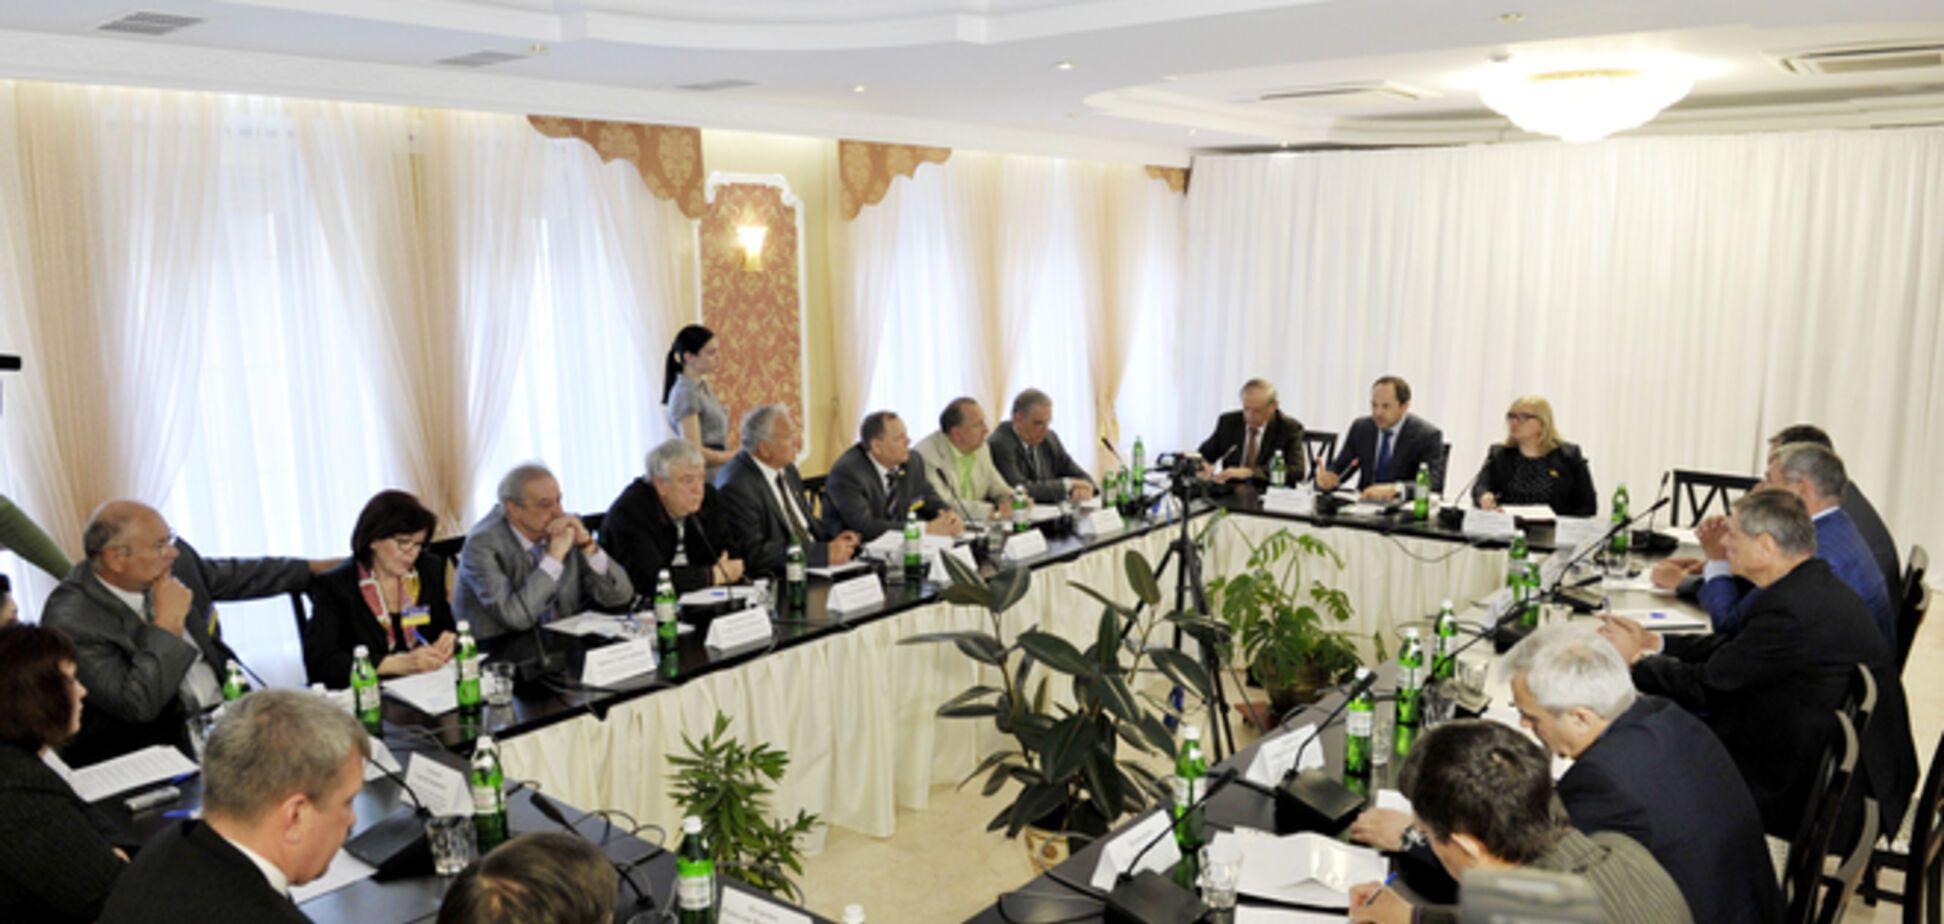 По инициативе Тигипко проходит конференция по урегулированию кризиса 'Мир и гражданское согласие в Украине'